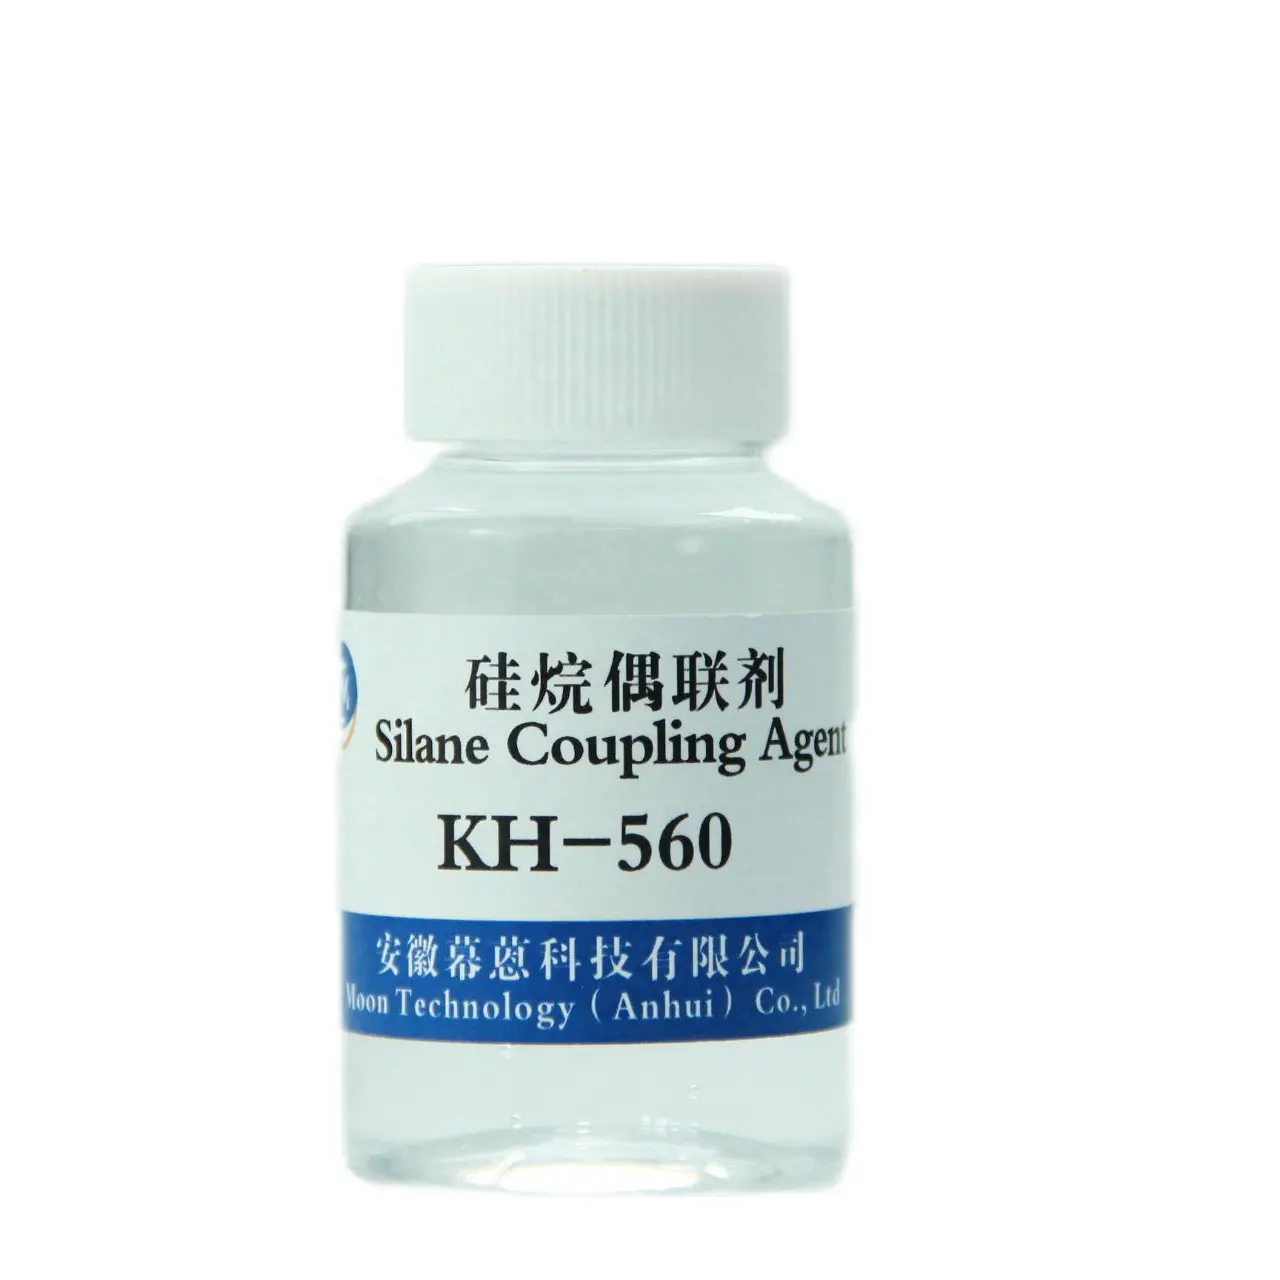 Le silane époxyde de l'agent KH560 d'accouplement de silane pour l'ABS, bakélite, nylon, PBT améliorent l'adhérence